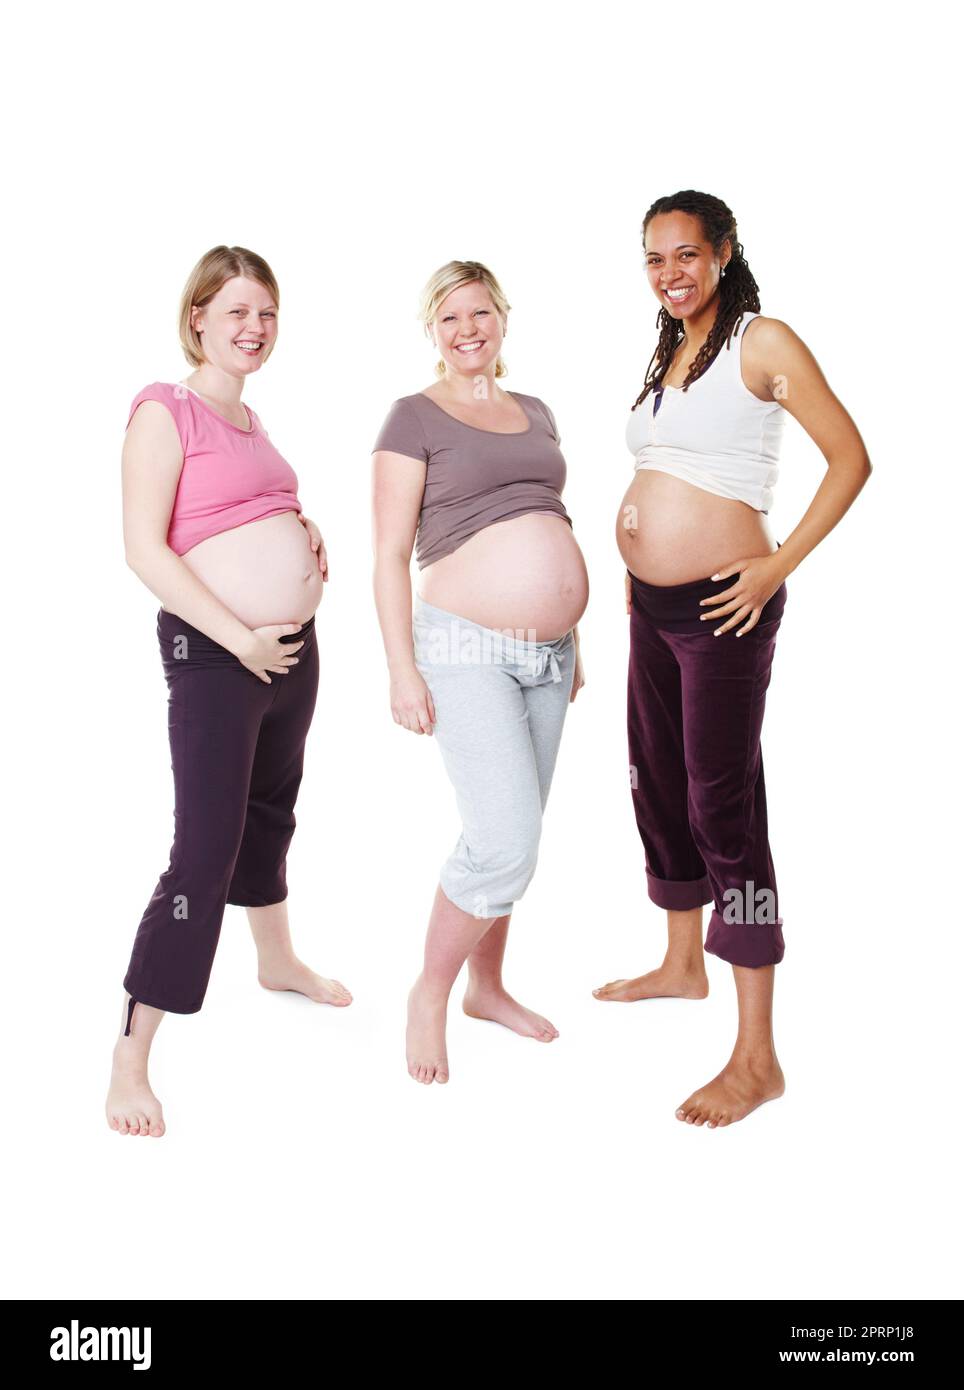 Ritratto di felice incinta, donna e amici in una foto di gruppo su sfondo bianco dello studio. Le donne nella diversità sorridono con i piccoli urti o la pancia in piedi nella felicità di essere una madre in mockup. Foto Stock